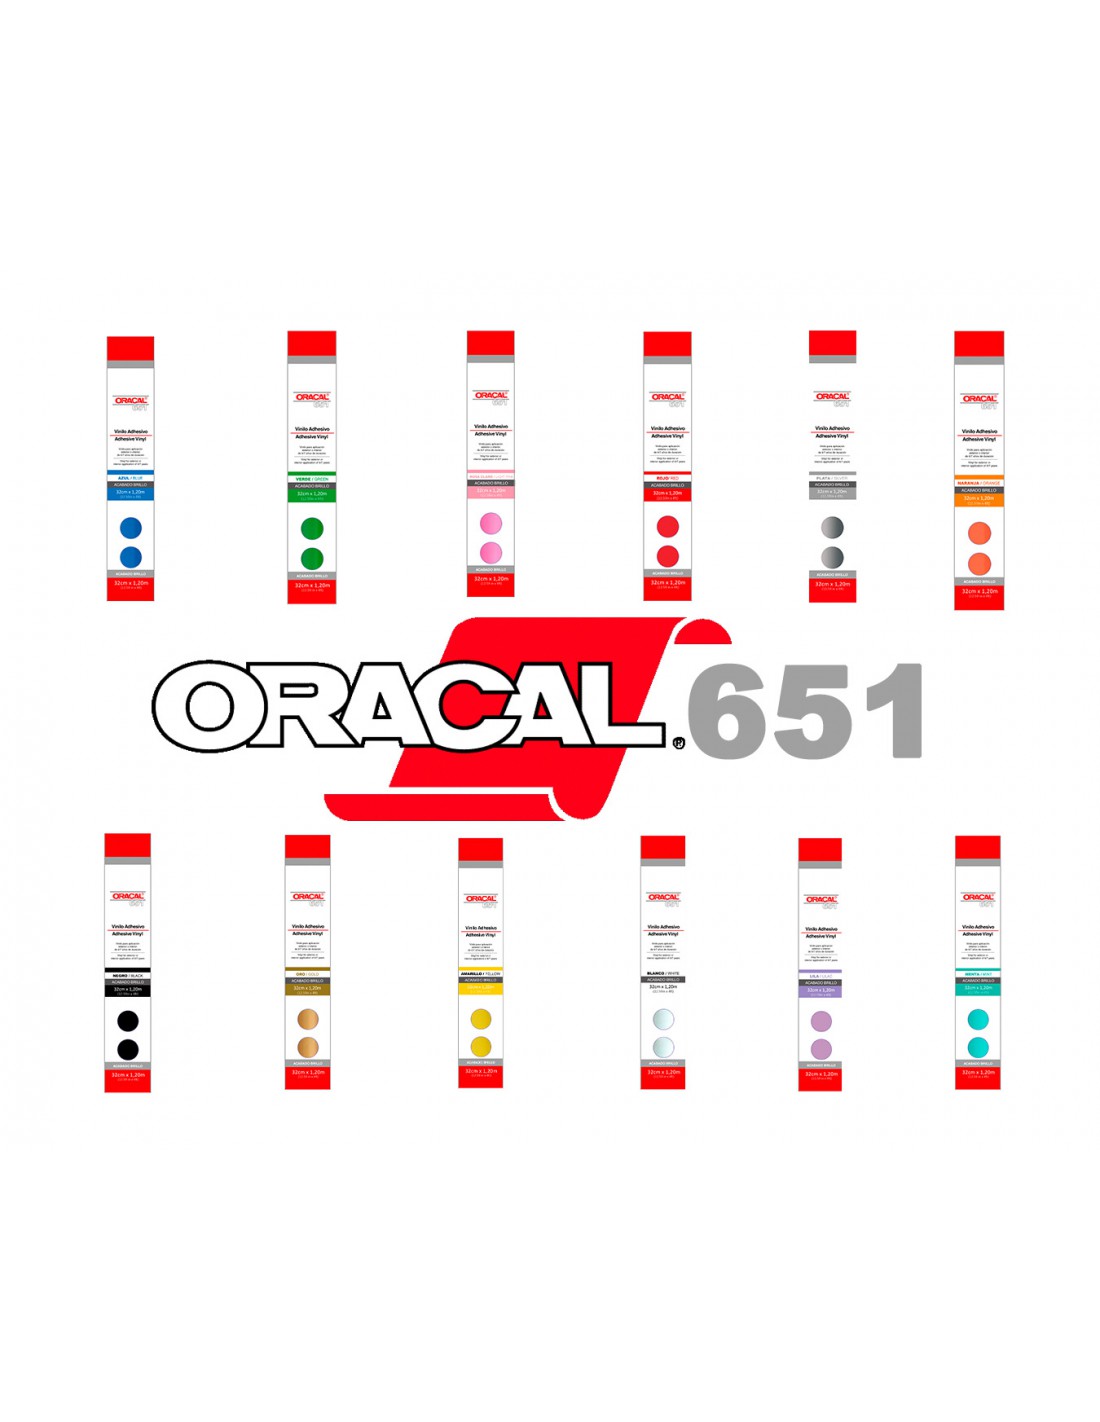 ORACAL 651 - Vinilo adhesivo gris oscuro brillante para cameo, Cricut y  silueta, incluye rollo de papel de transferencia transparente (30 x 12